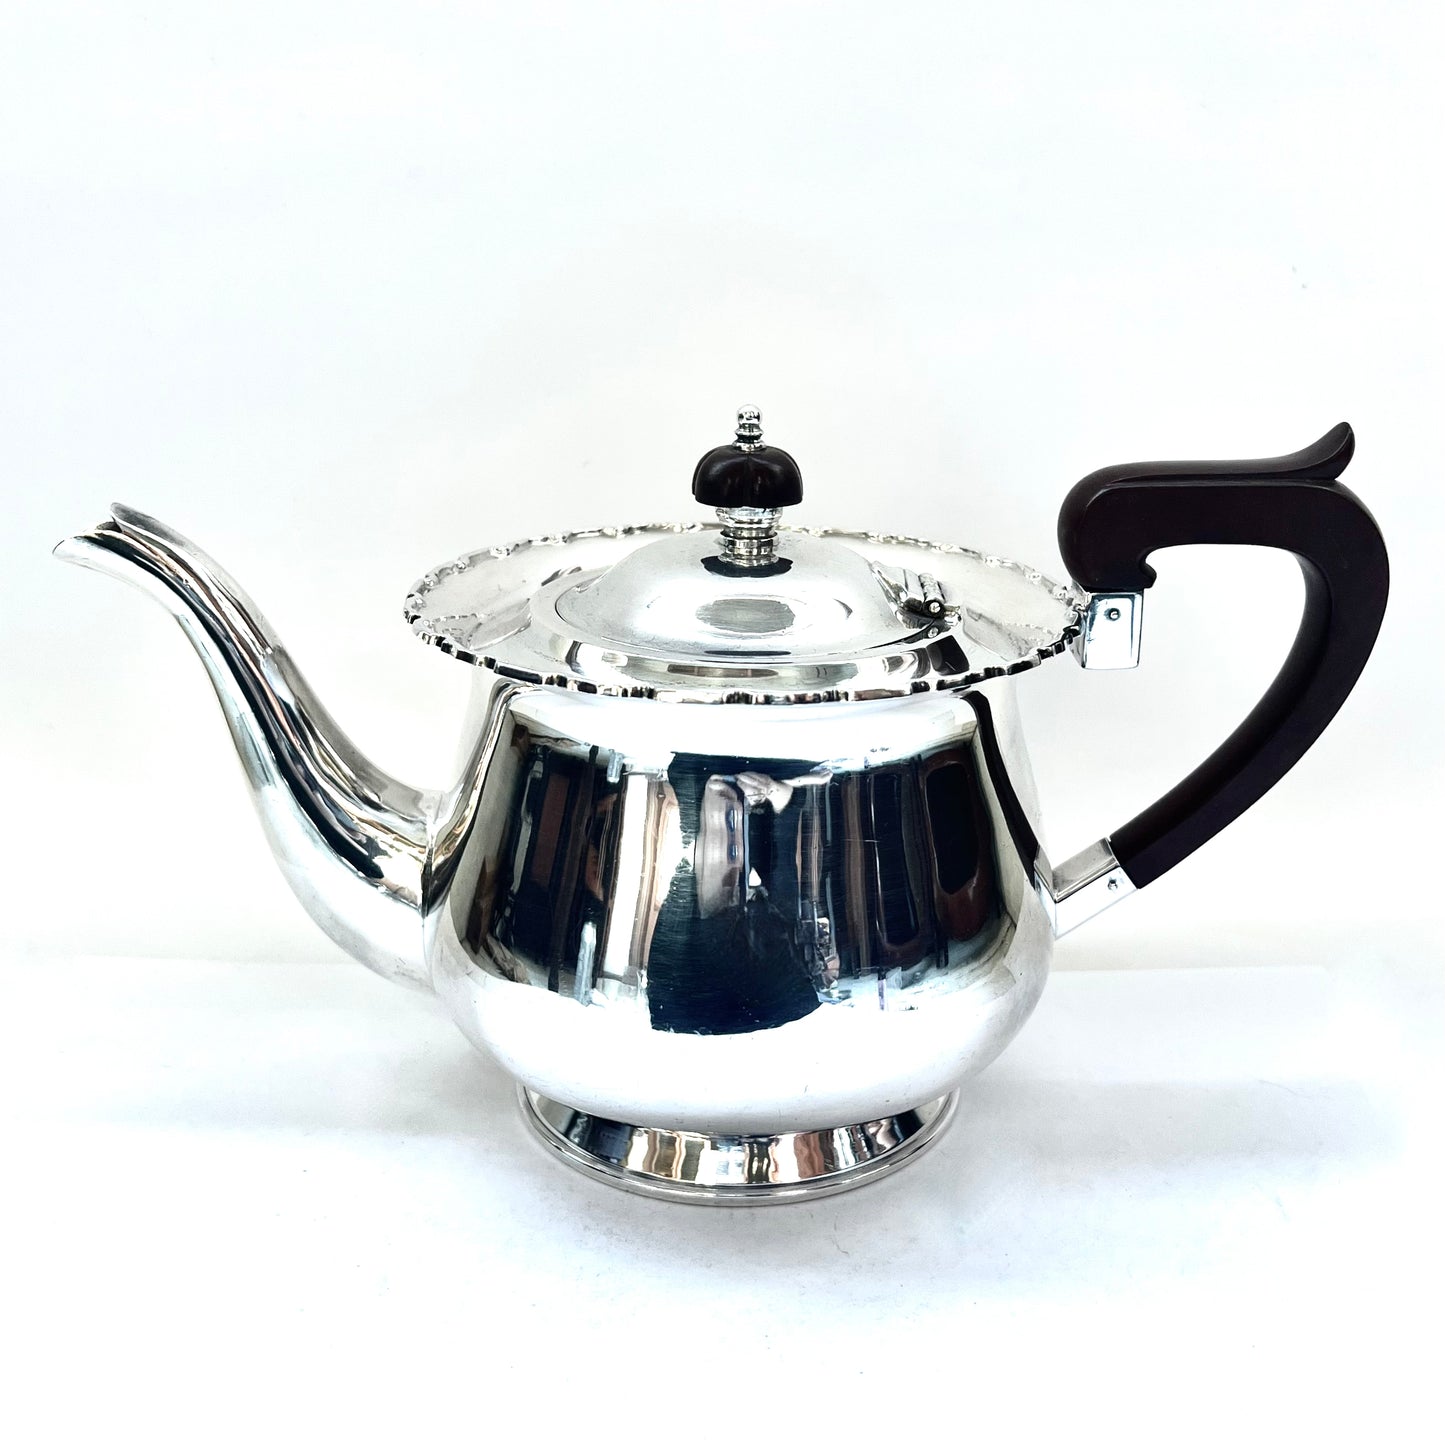 20 世纪 30 年代澳大利亚 WJ Sanders 纯银茶壶，带装饰艺术风格的顶饰和手柄，可能是胶木